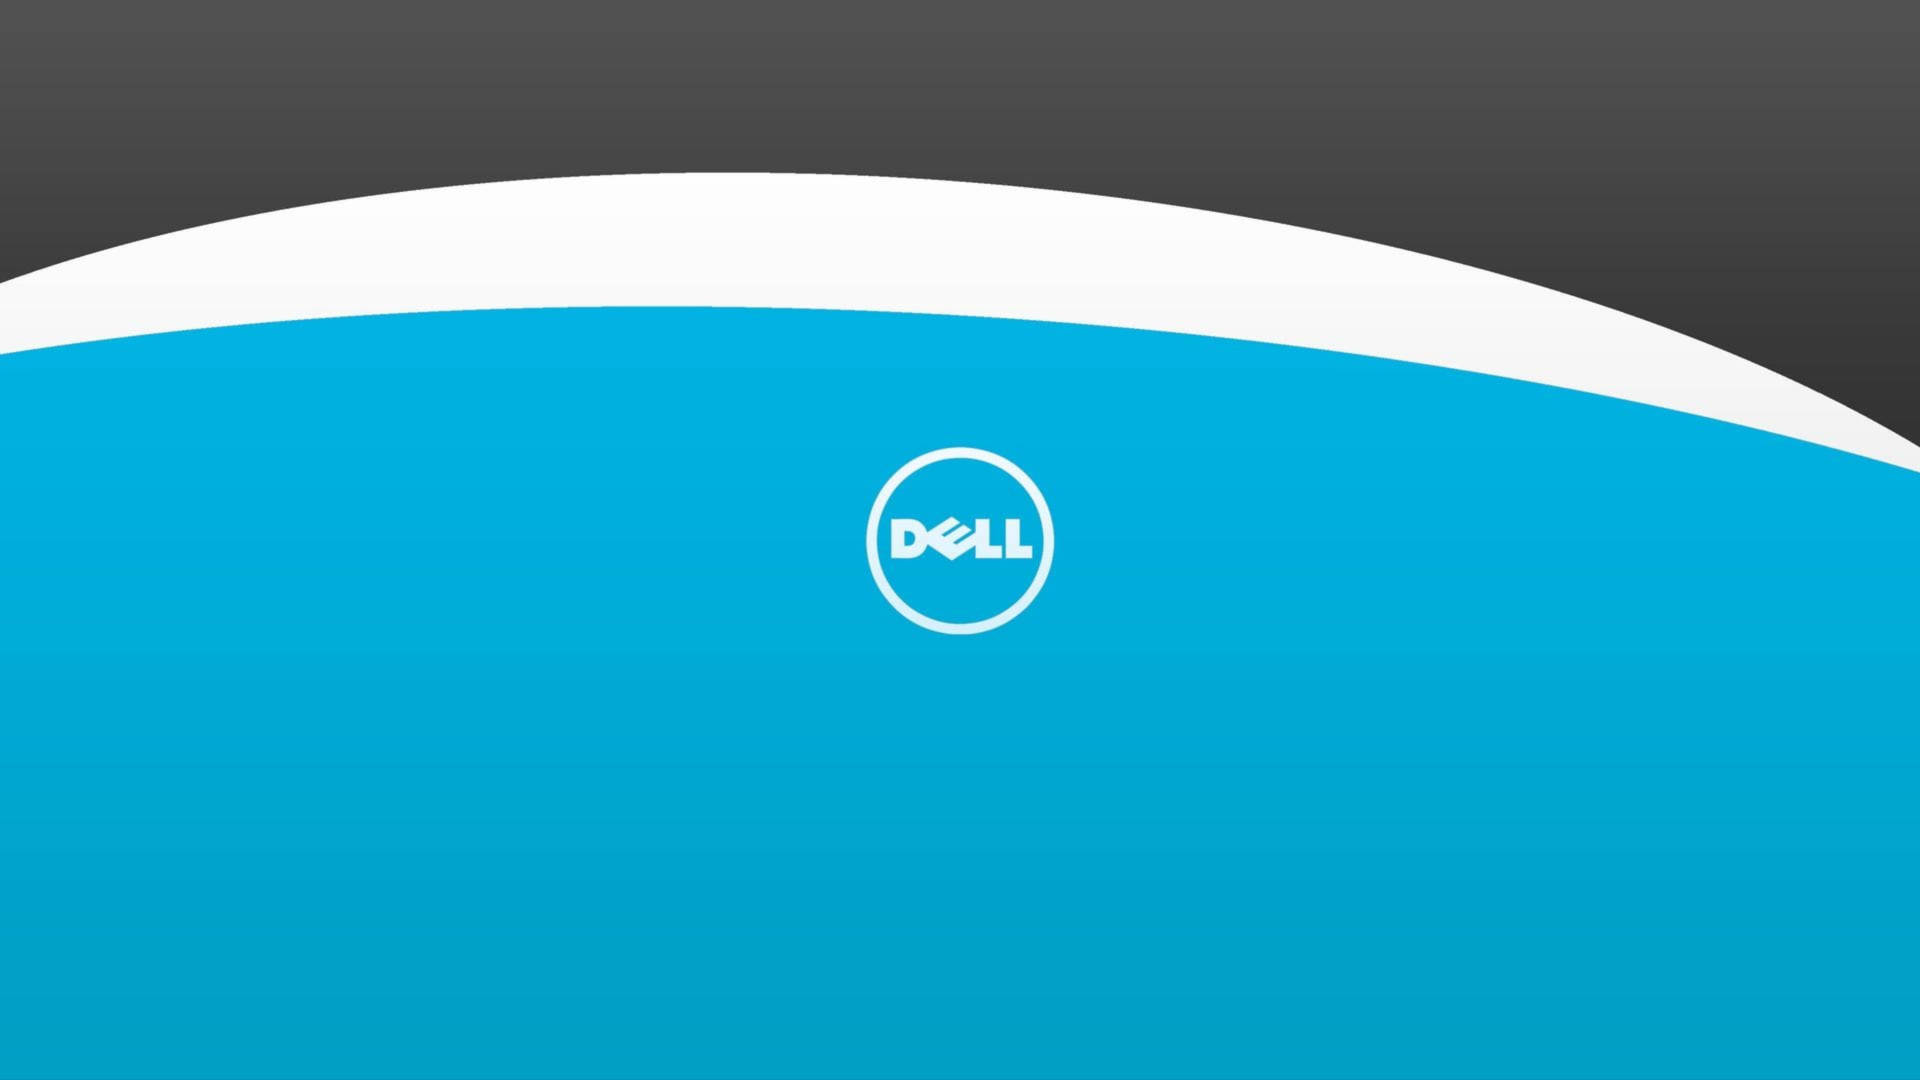 Dell 4k Logo On Blue